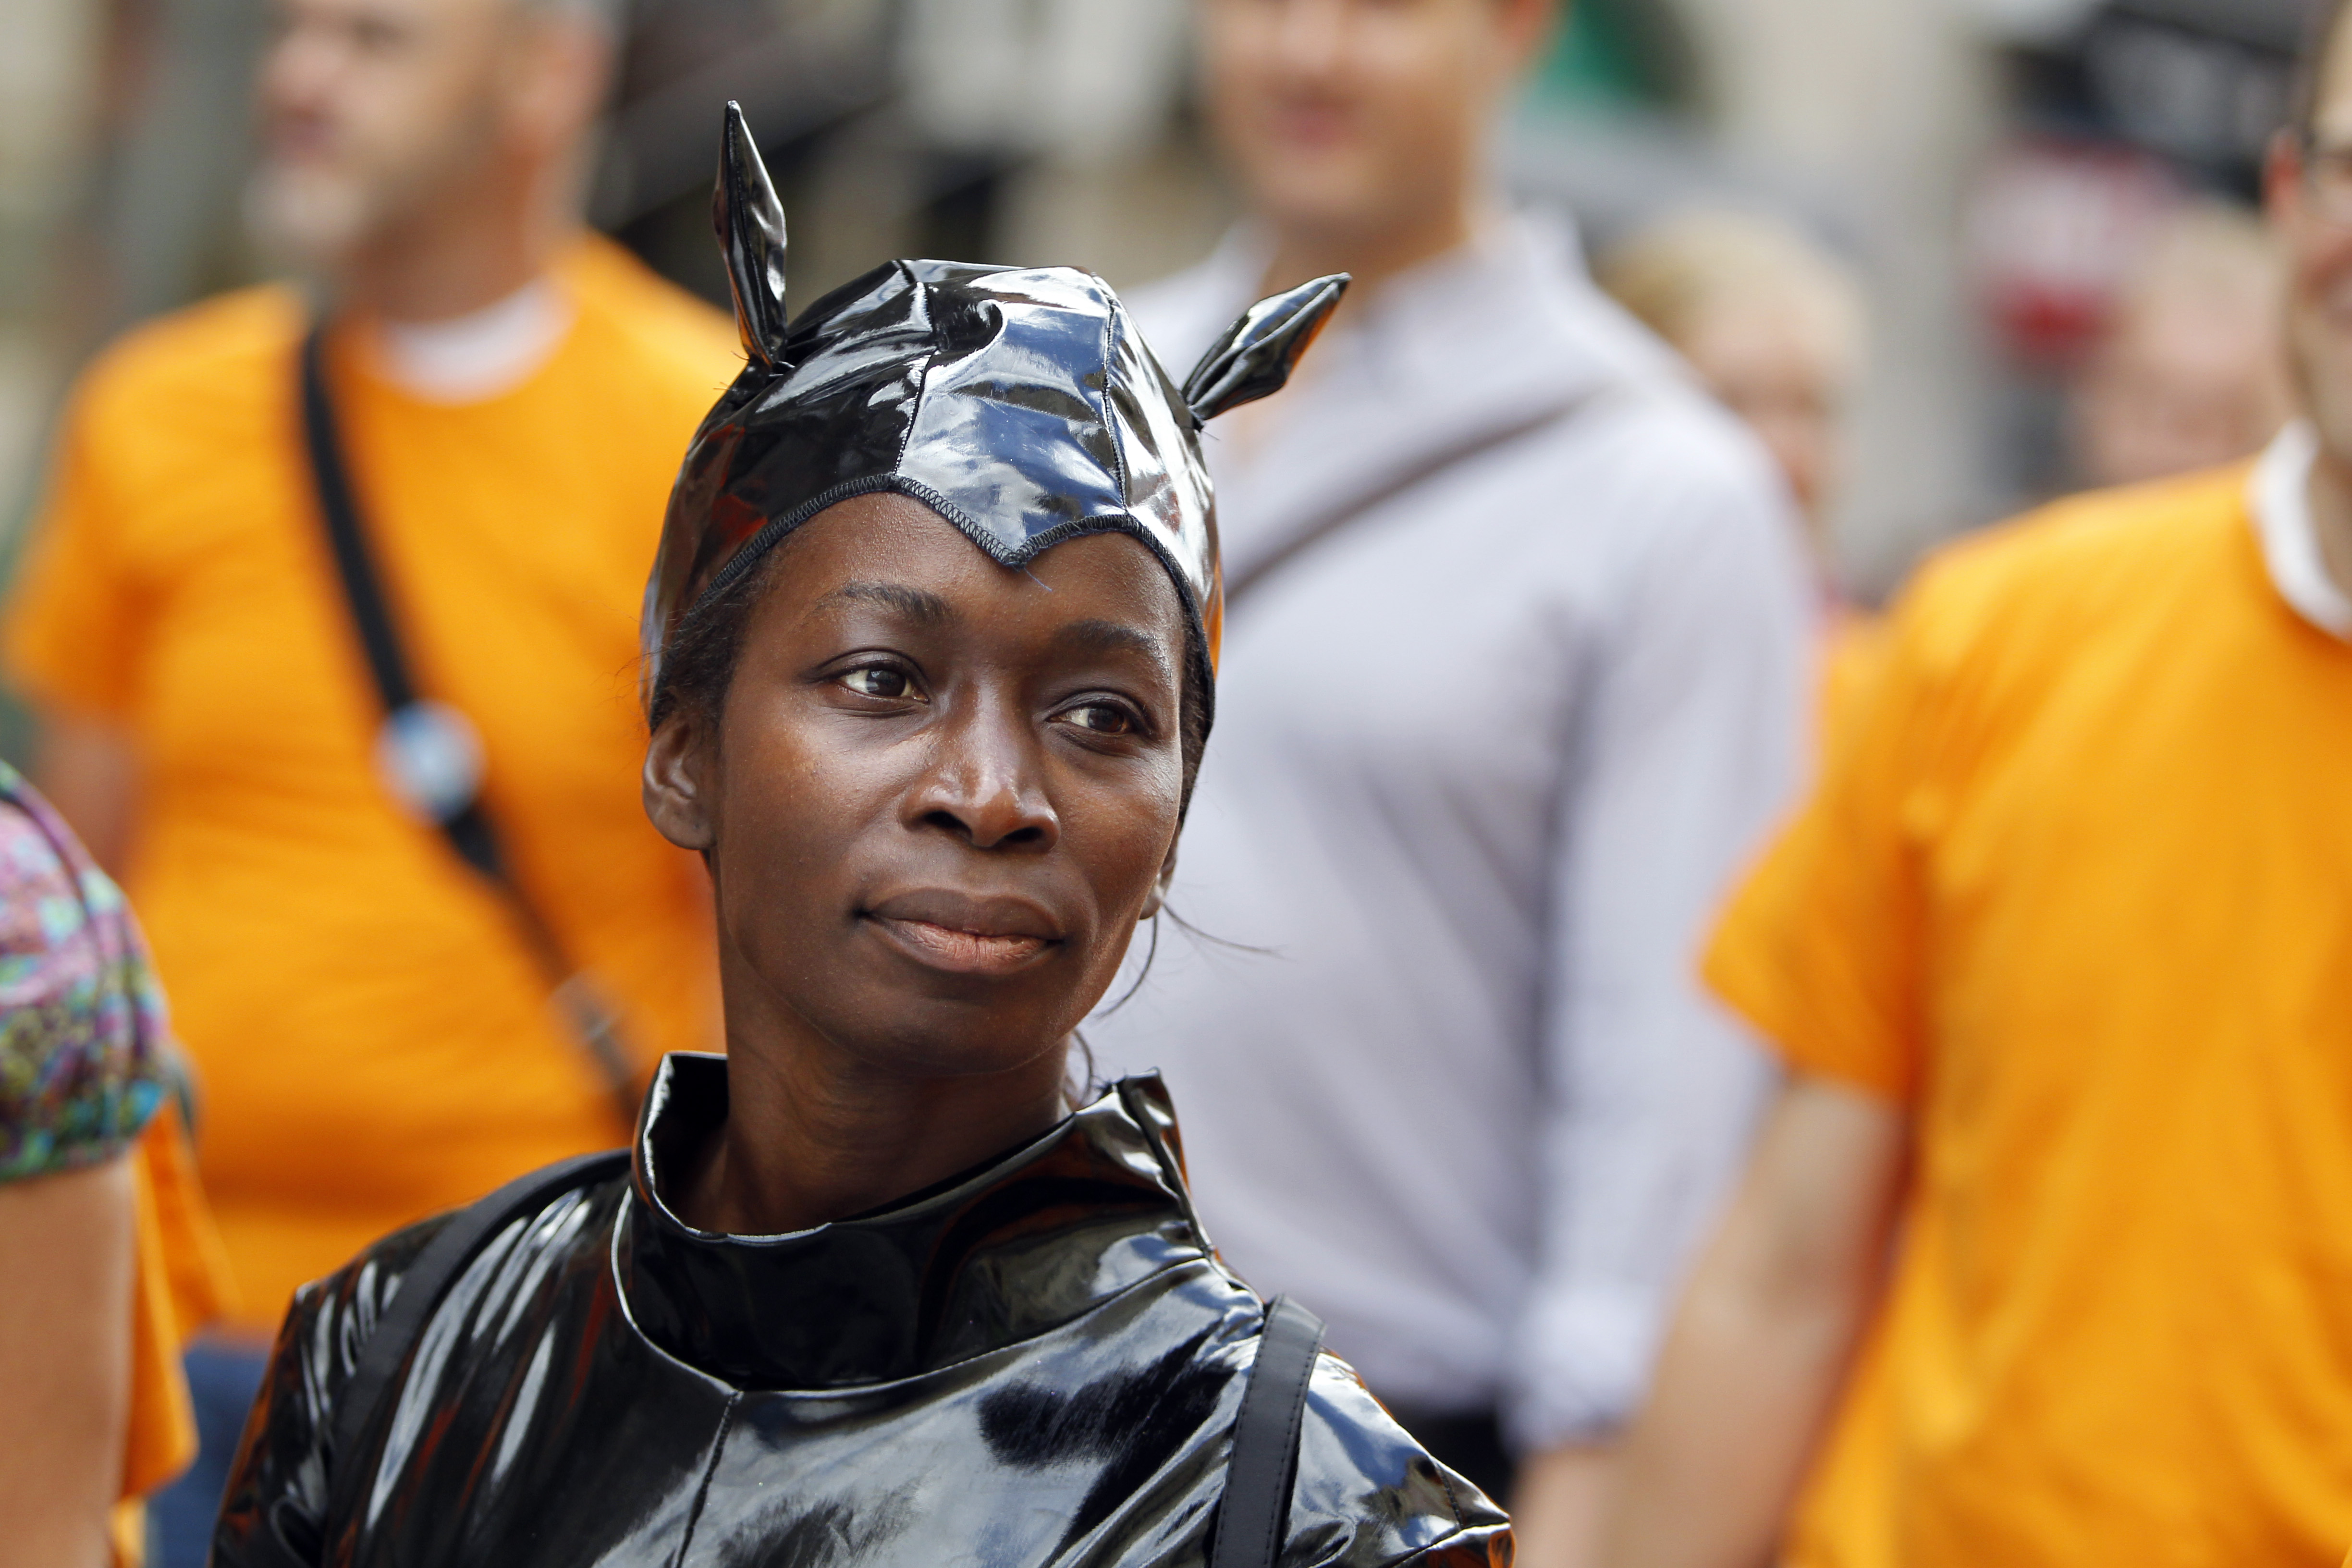 Sabuni under Prideparaden i Stockholm 2010, utklädd till Catwoman.